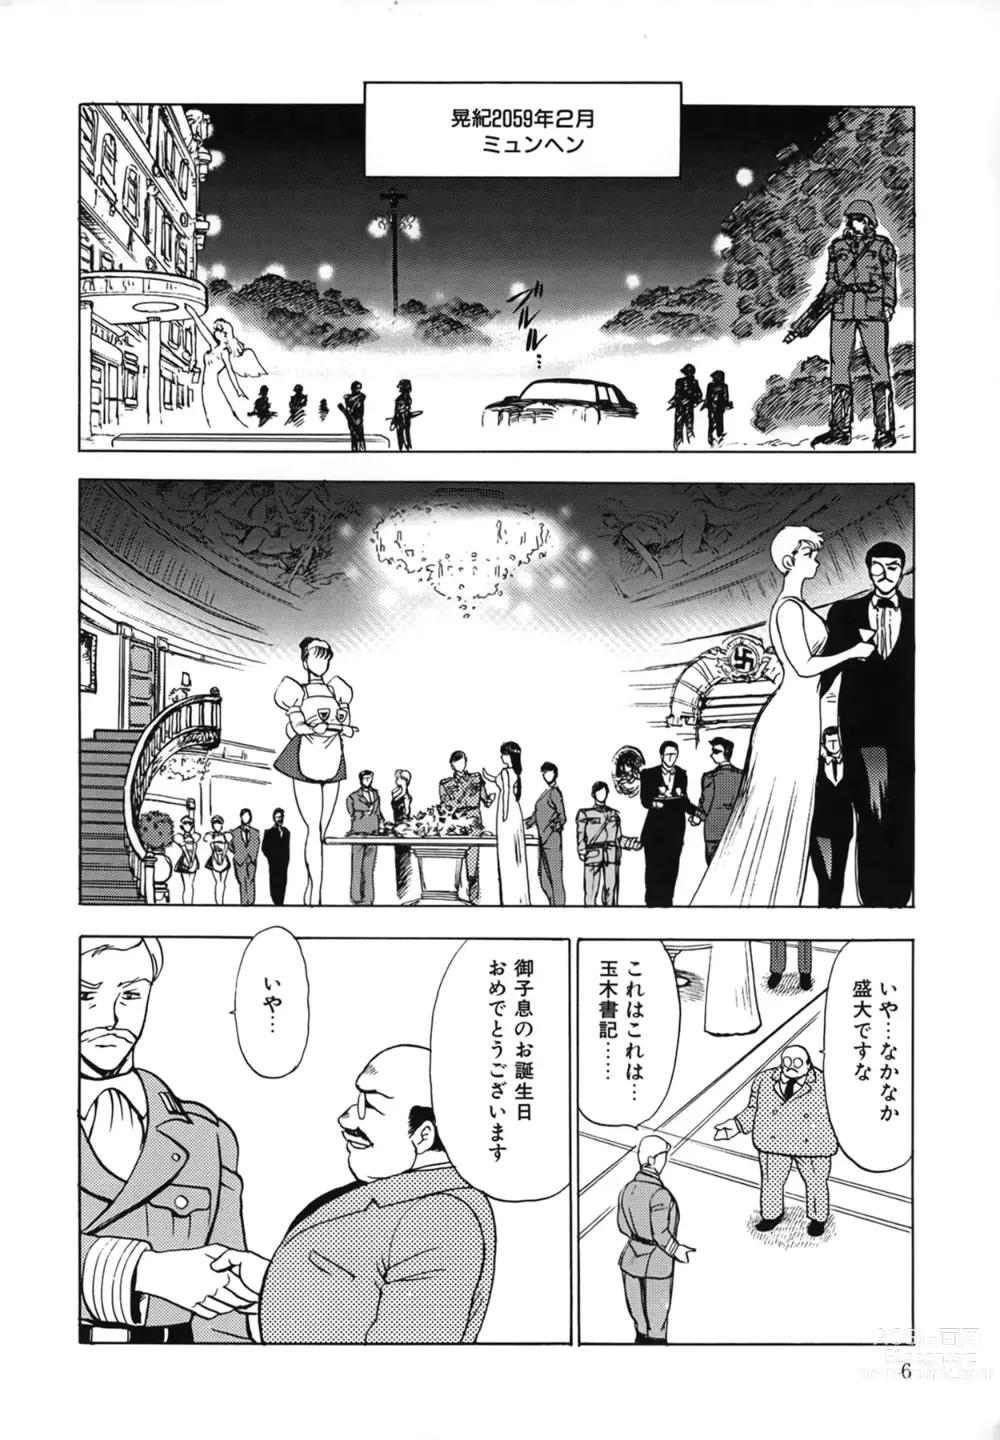 Page 6 of manga Inbi Teikoku